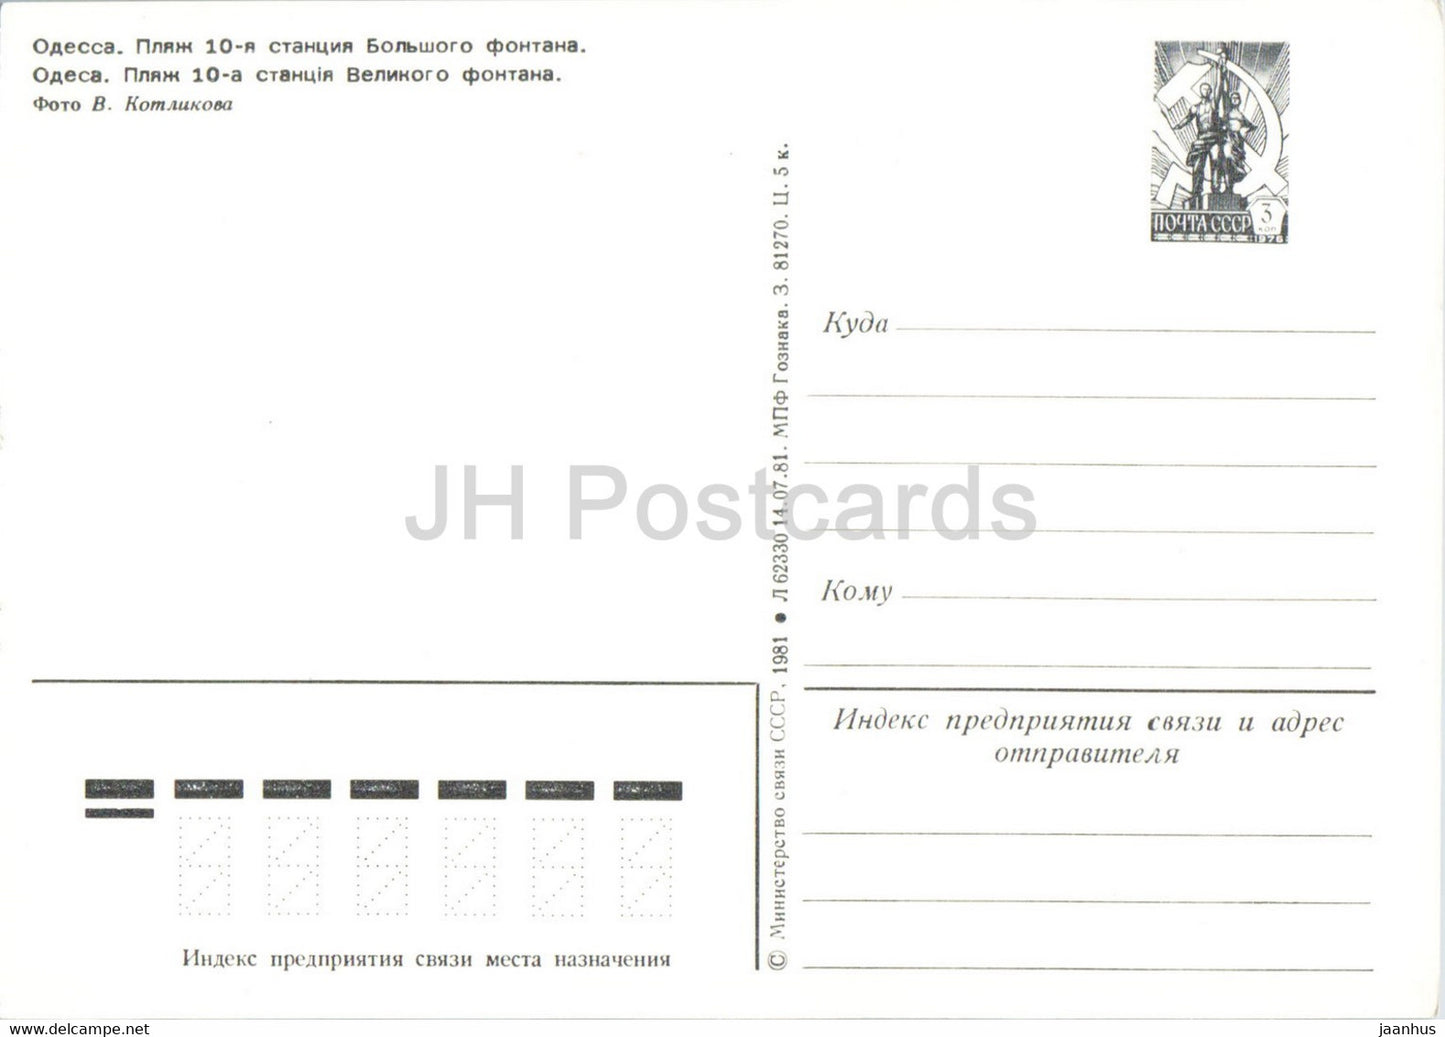 Odessa - Plage de la 10ème station de la Grande Fontaine - entier postal - 1981 - Ukraine URSS - inutilisé